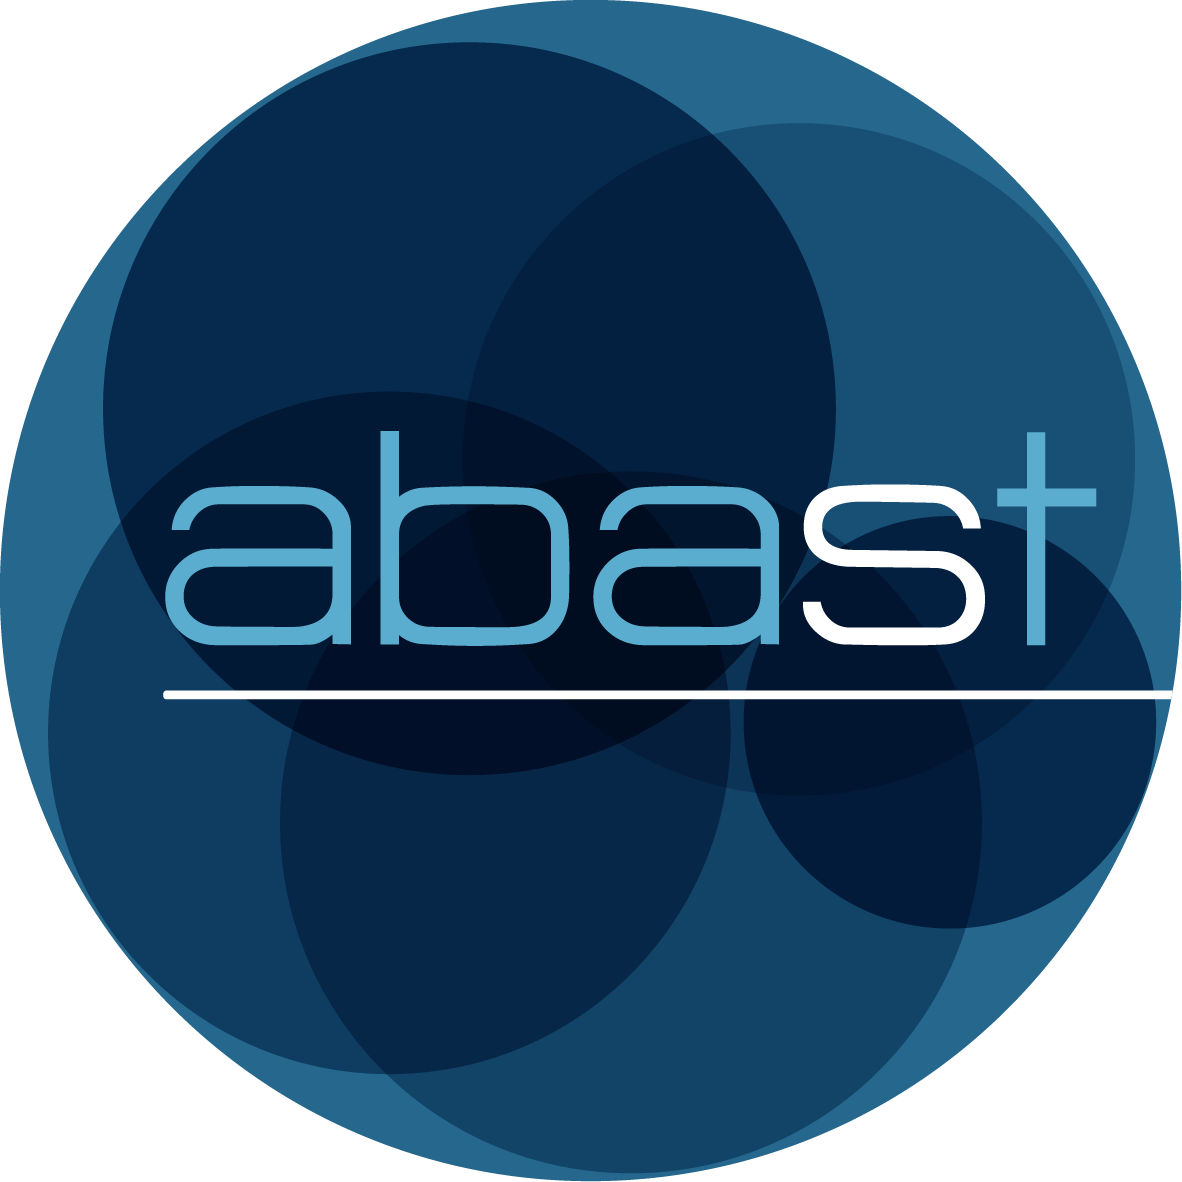 ABAST logo